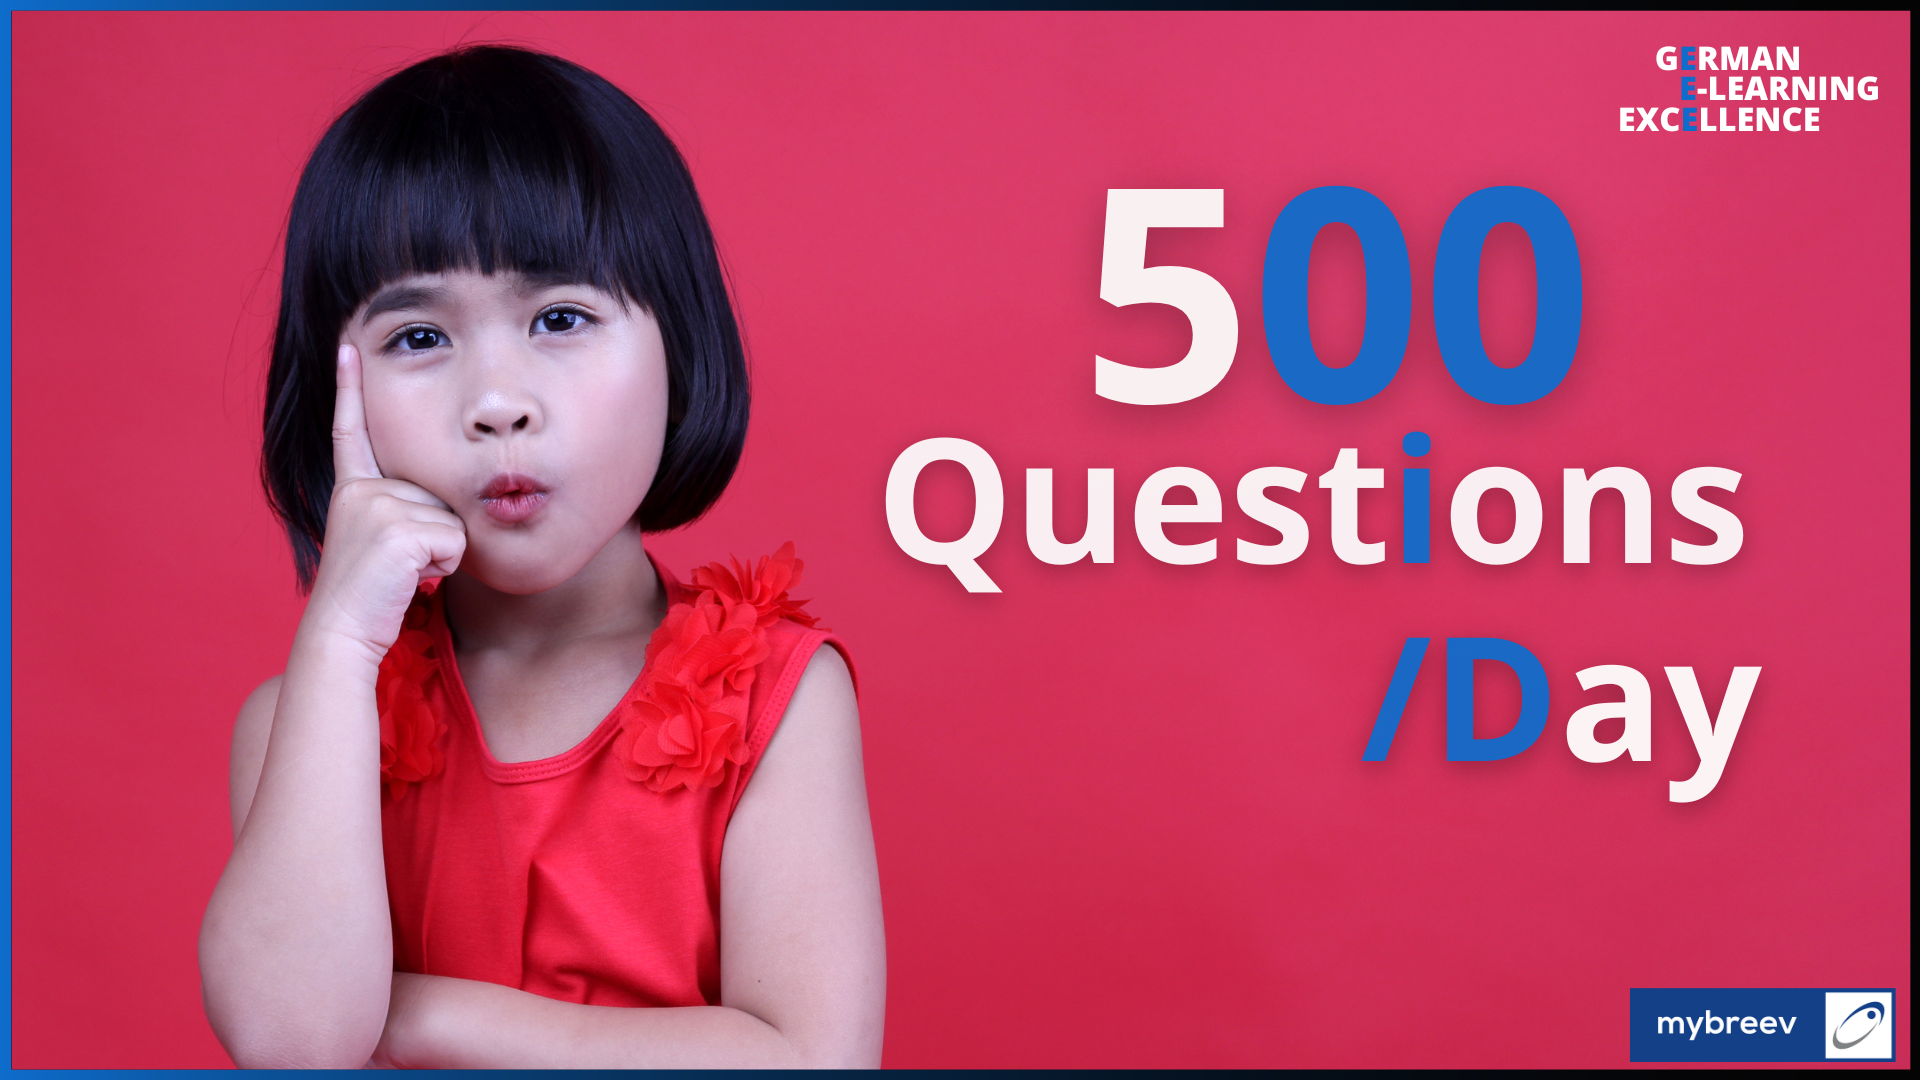 Ein Kind stellt bis zu 500 Fragen am Tag. Und Sie?